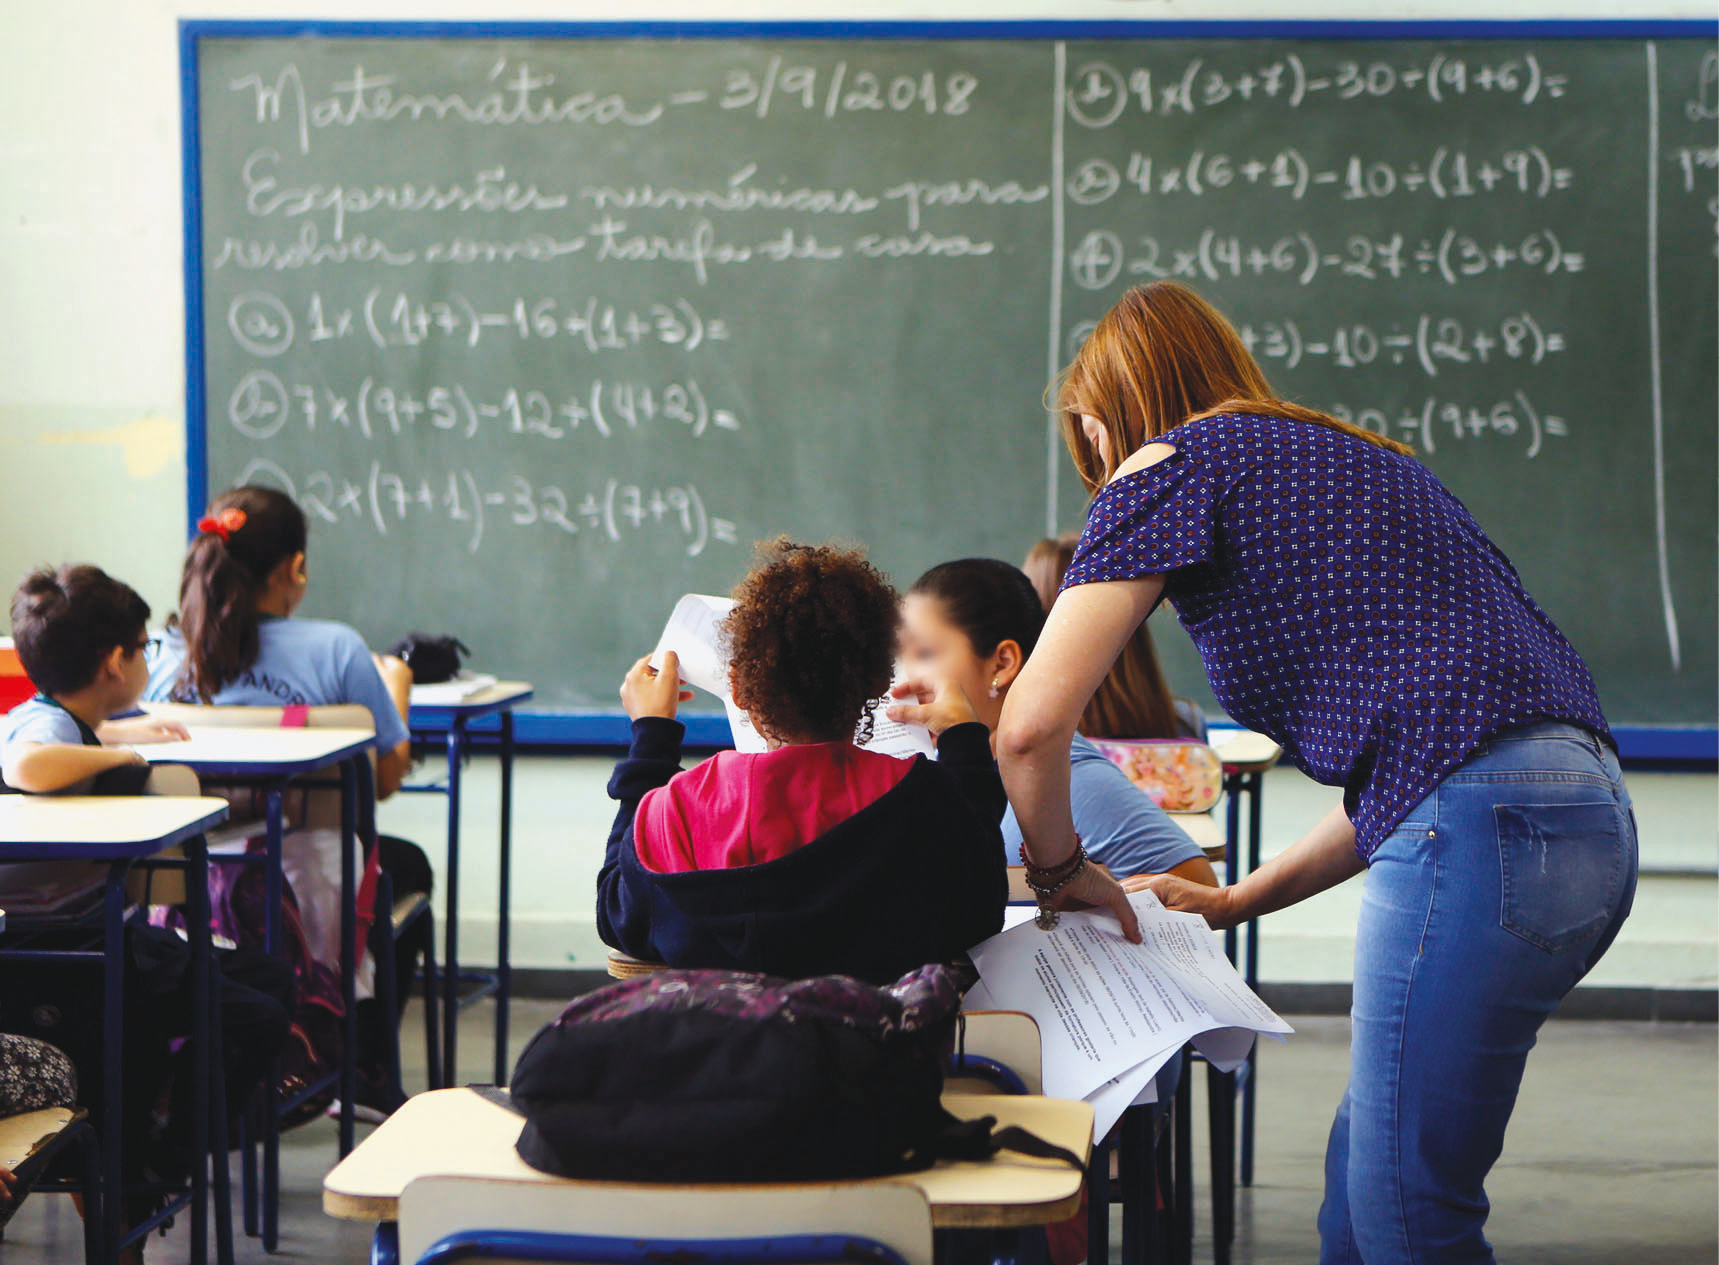 Fotografia. Crianças vistas de costas sentadas em carteiras enfileiradas em uma sala de aula. A professora está em pé, à direita, ao lado de uma das crianças, distribuindo folhas de papel. Ao fundo, lousa com expressões matemáticas.